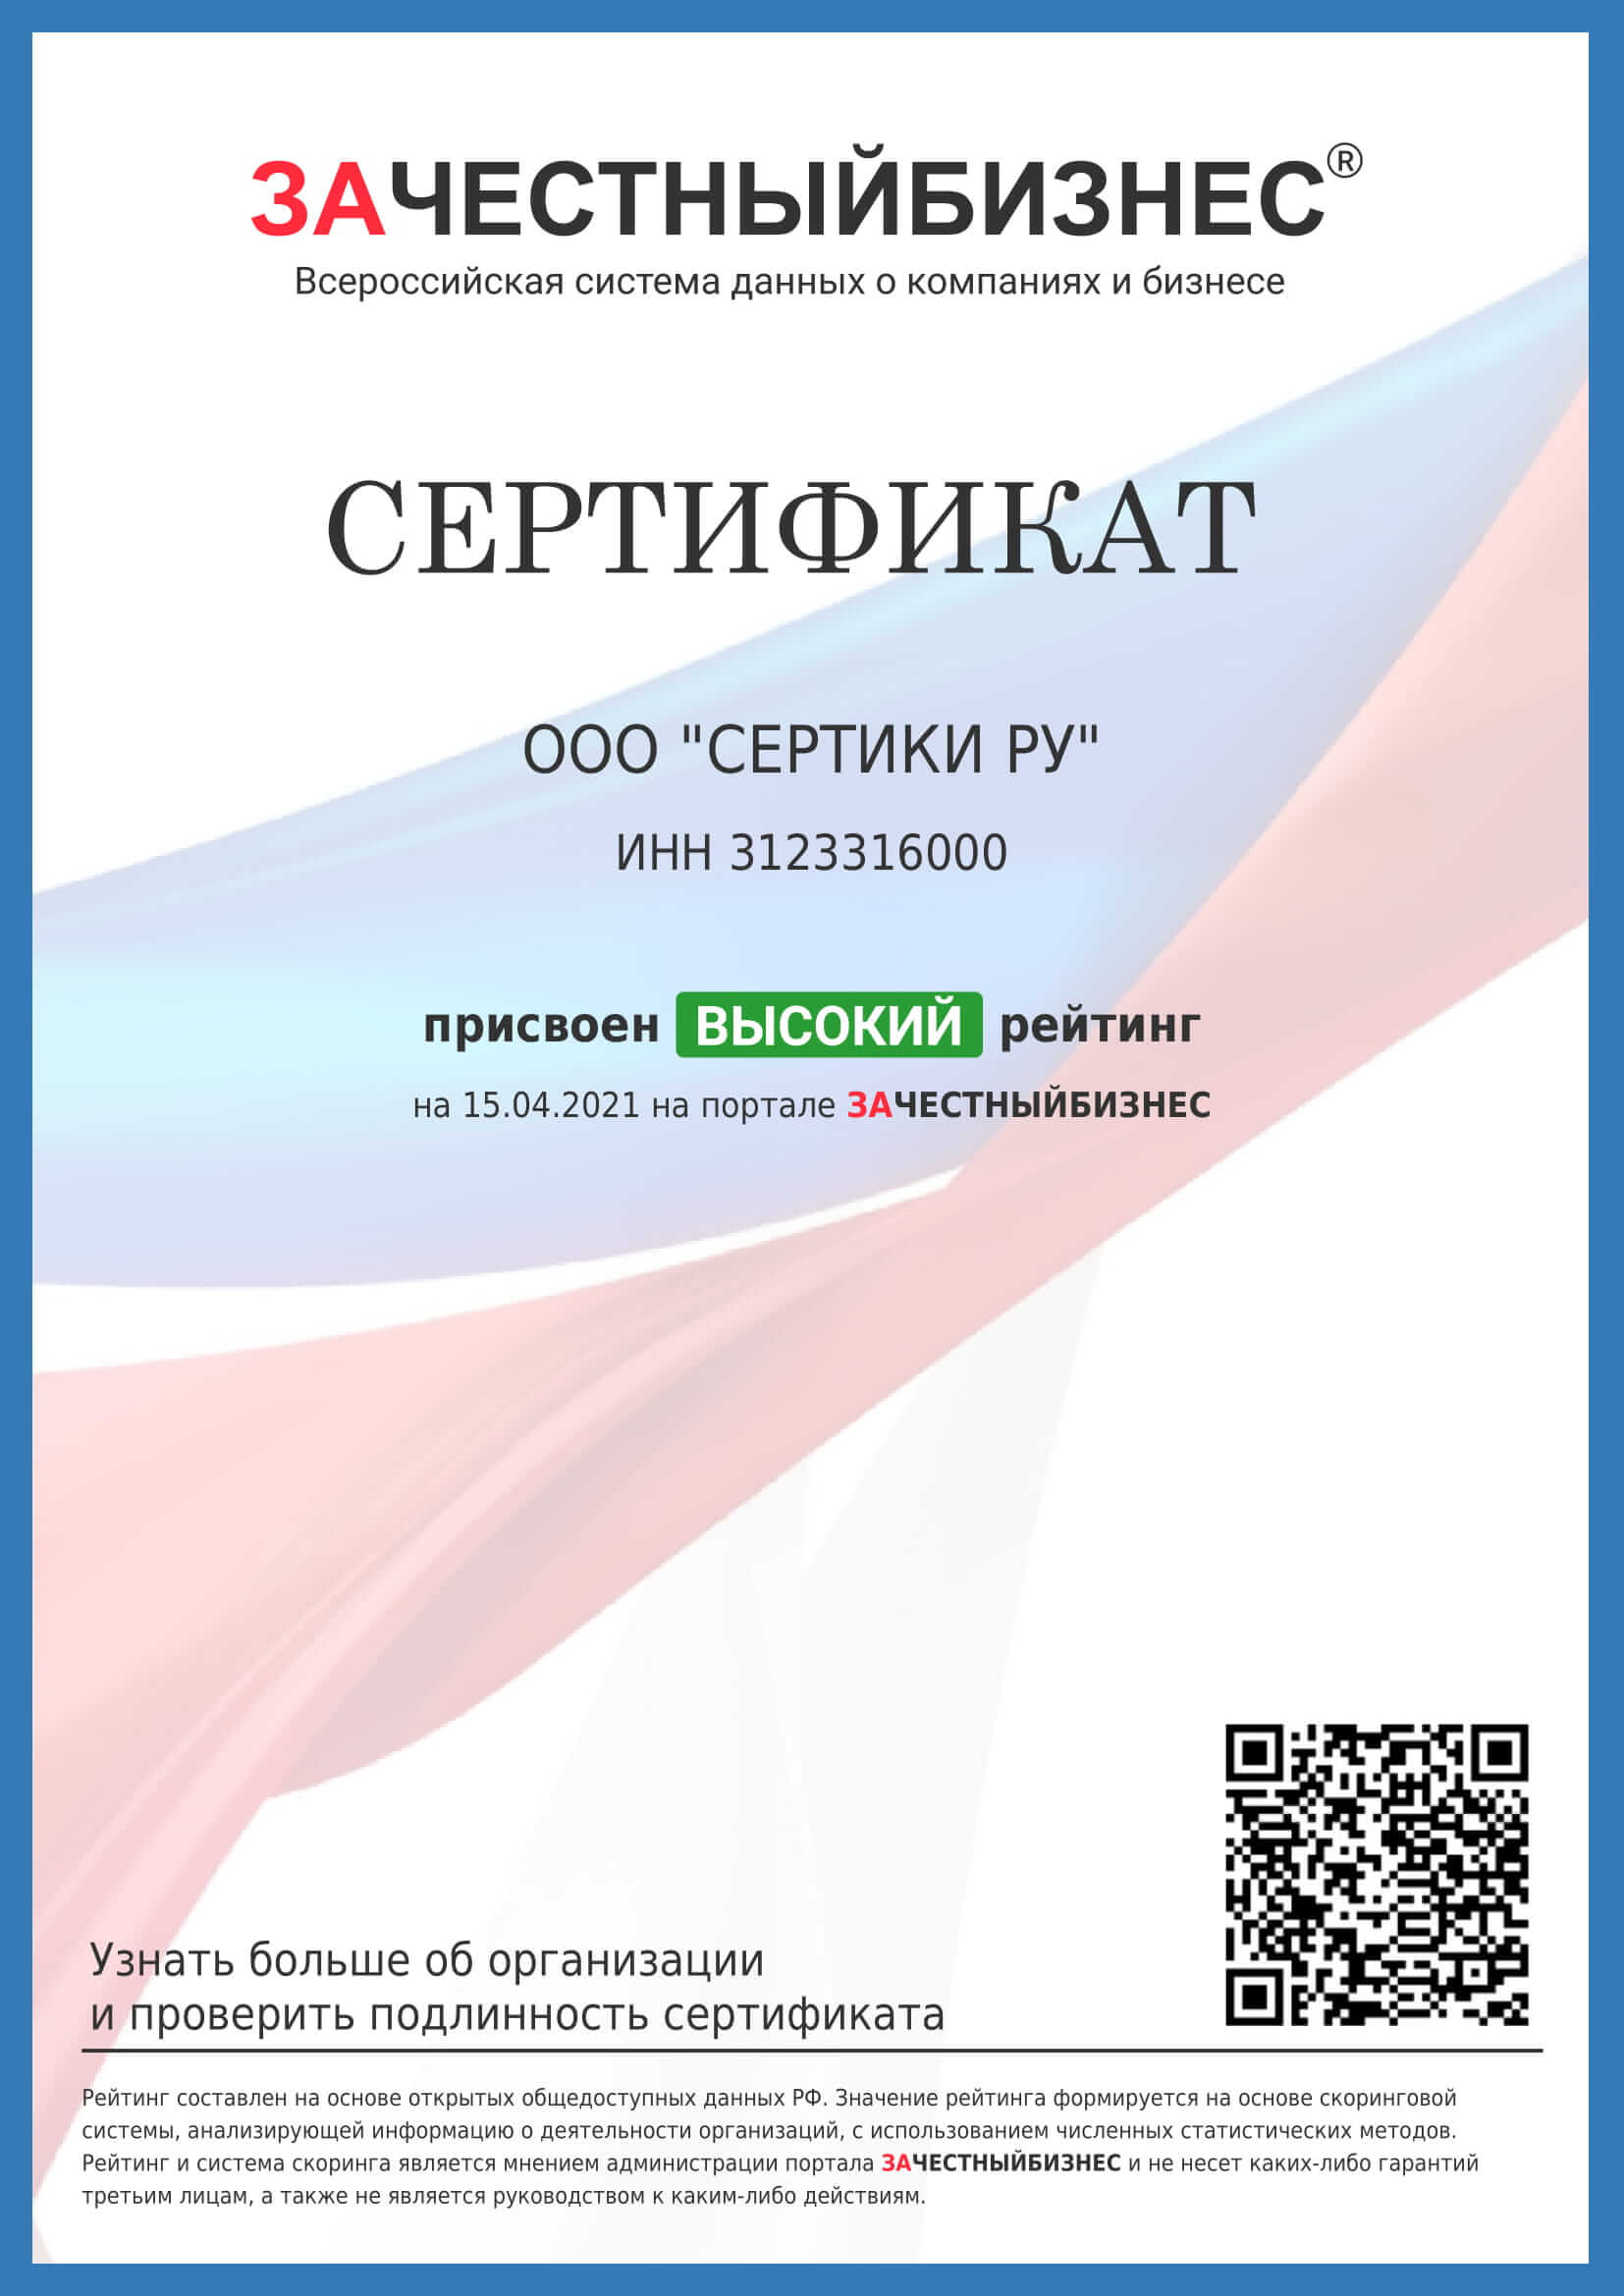 Сертификат портала ЗАЧЕСТНЫЙБИЗНЕС